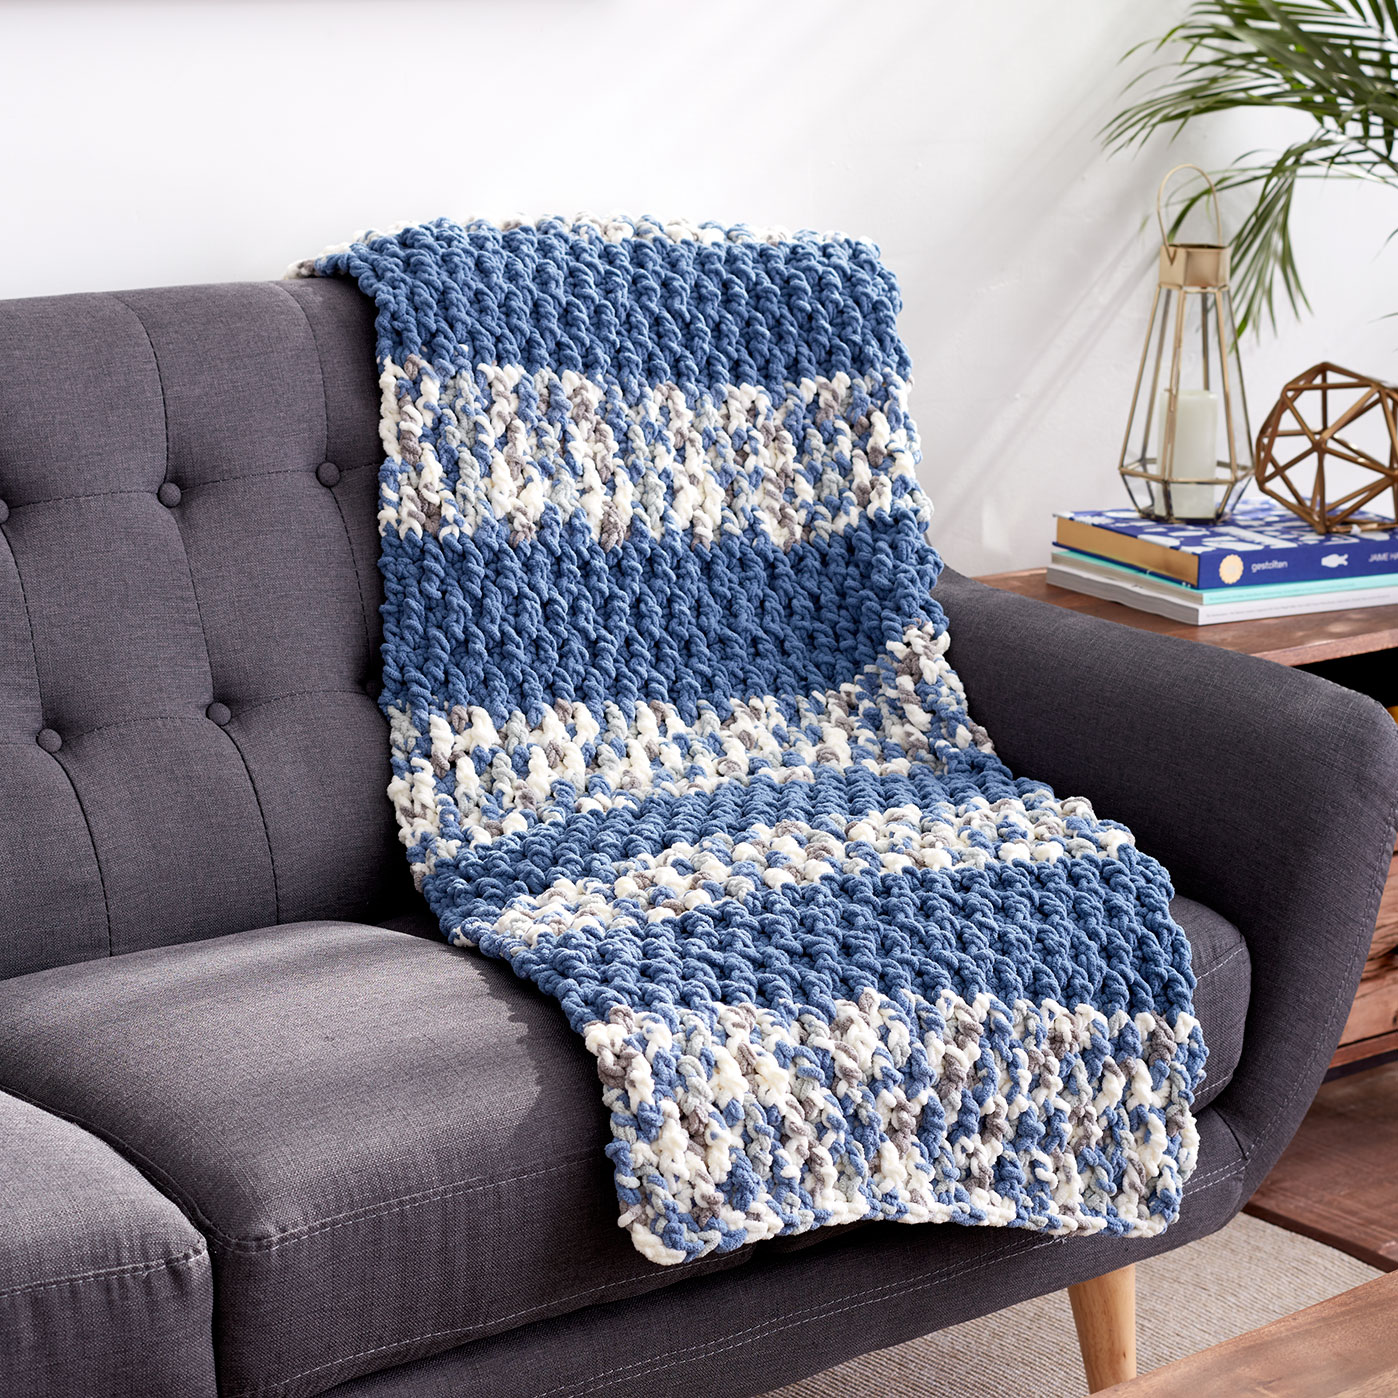 Bernat  Blanket  Lush Stripes Crochet Blanket